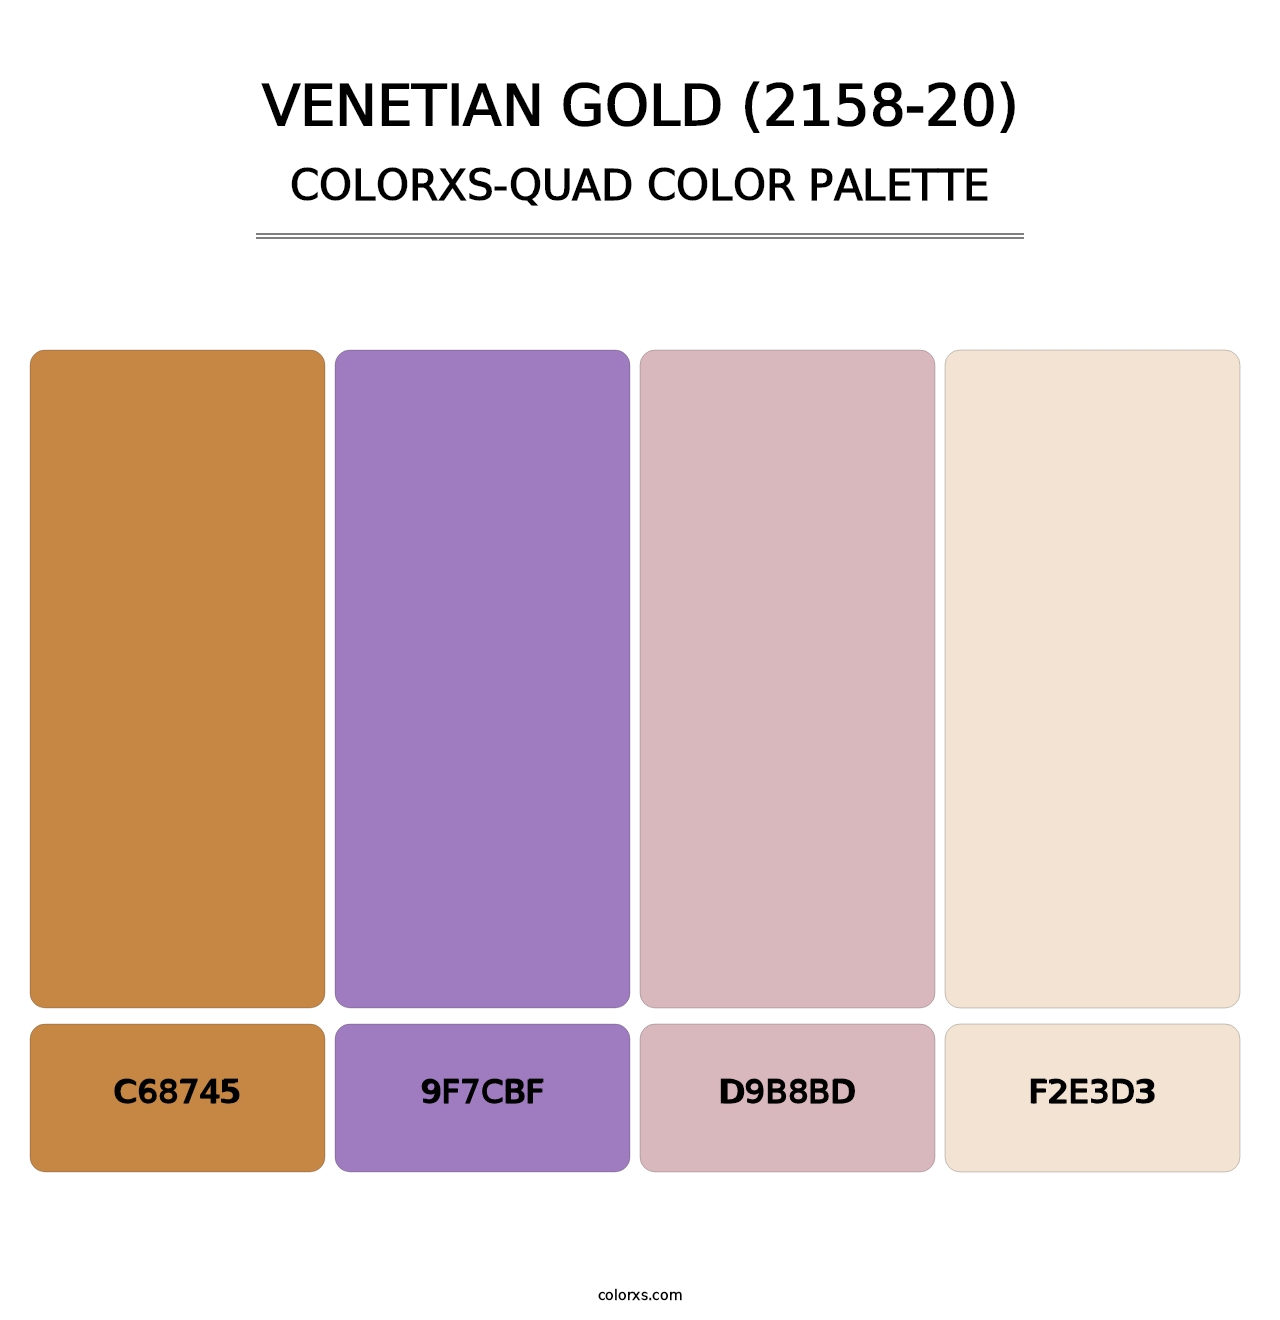 Venetian Gold (2158-20) - Colorxs Quad Palette